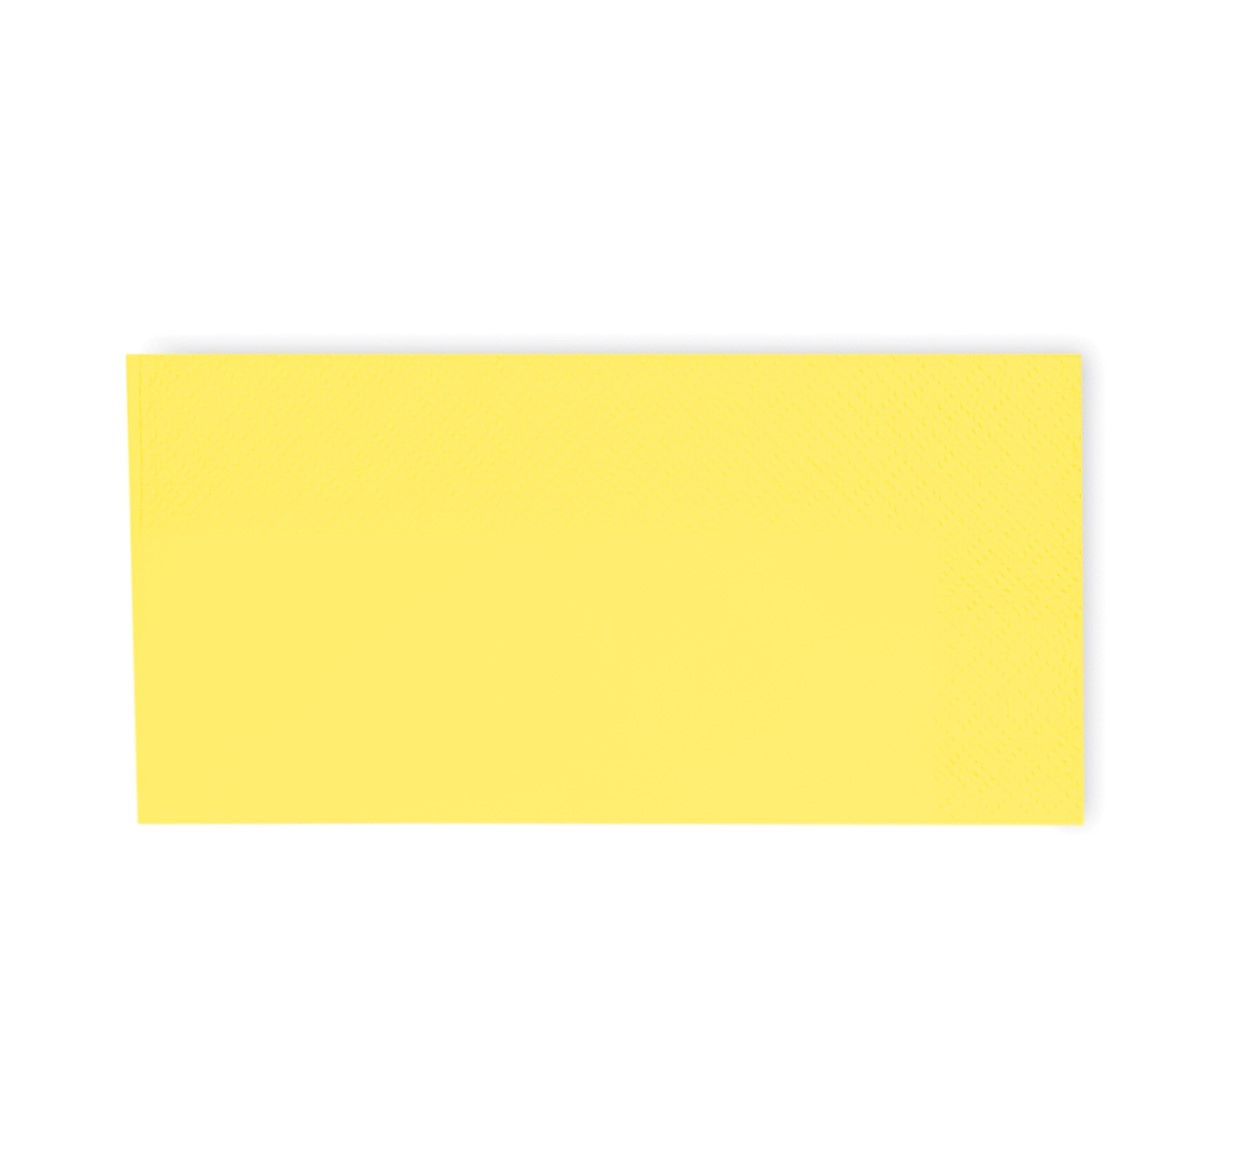 Zelltuchservietten 3-lagig, 33 x 33 cm, 1/8 Falz, gelb, VE 1000